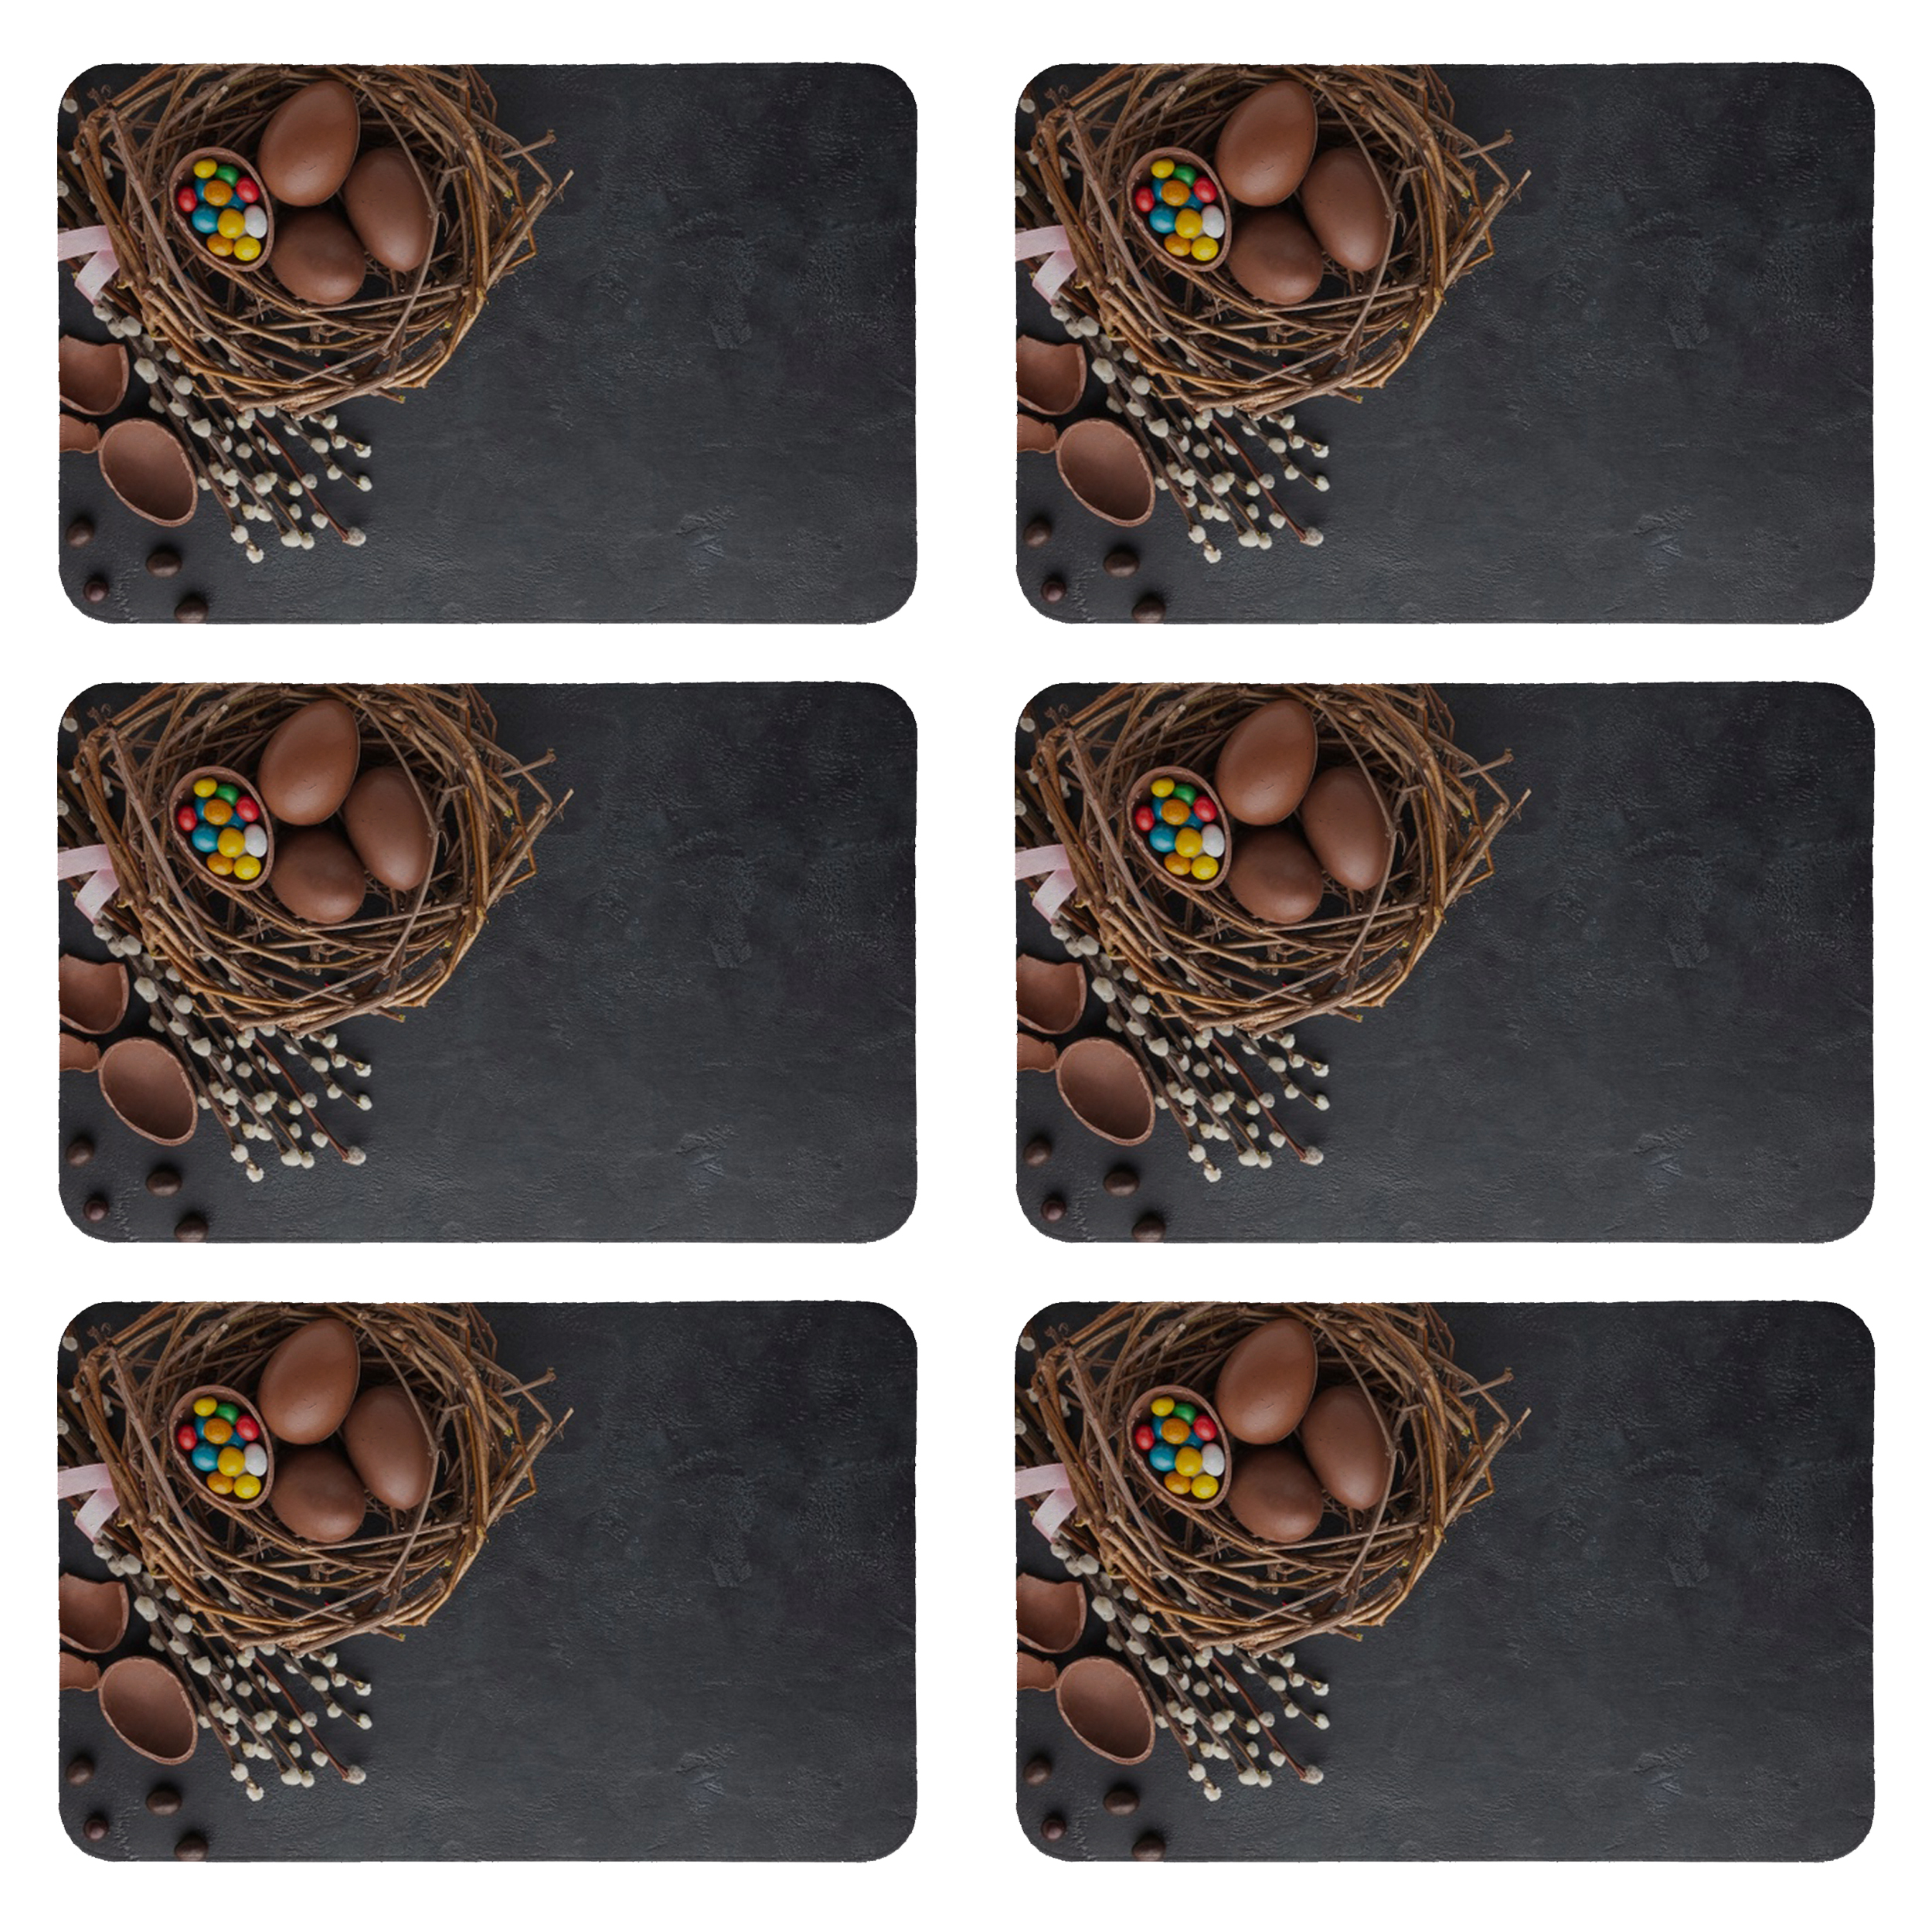 زیربشقابی طرح شکلات کد 8131 بسته 6 عددی